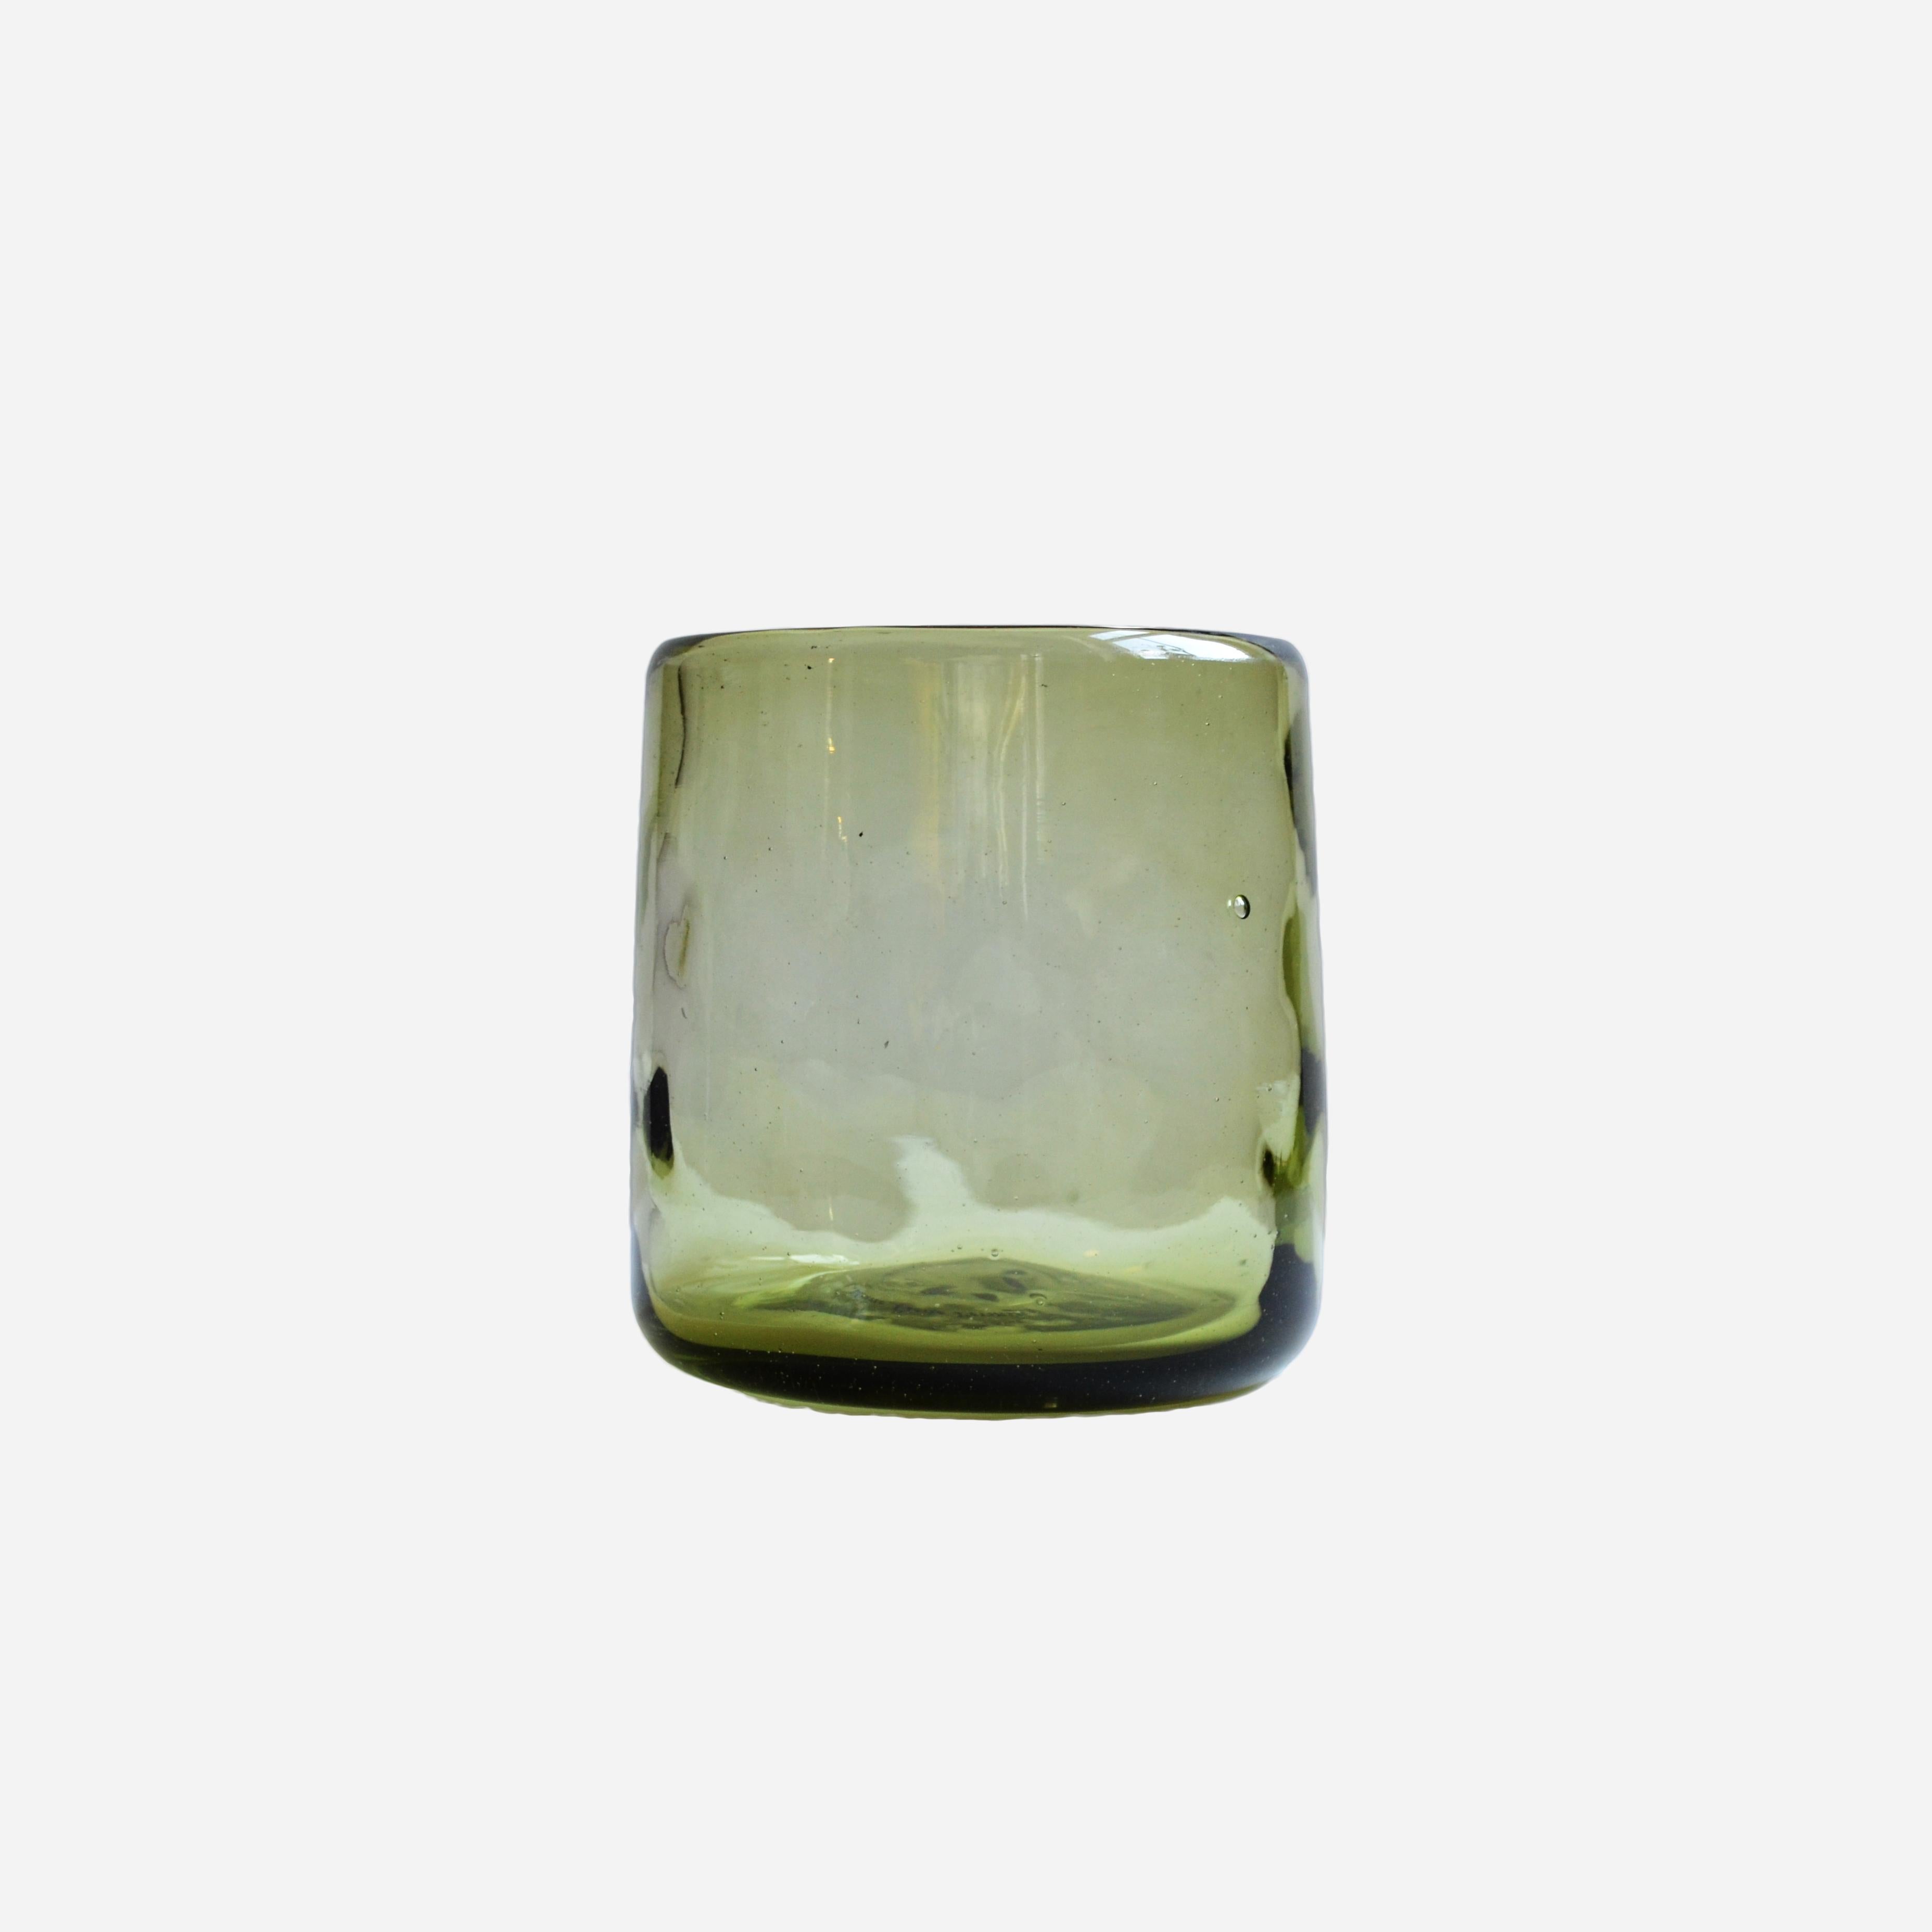 White Lights est un ensemble de verres transparents soufflés à la main dont la forme organique s'inspire de la surface naturelle de la terre.

Nightlights of Mexico City collection de lunettes classiques inspirées de la vie nocturne de l'âge d'or